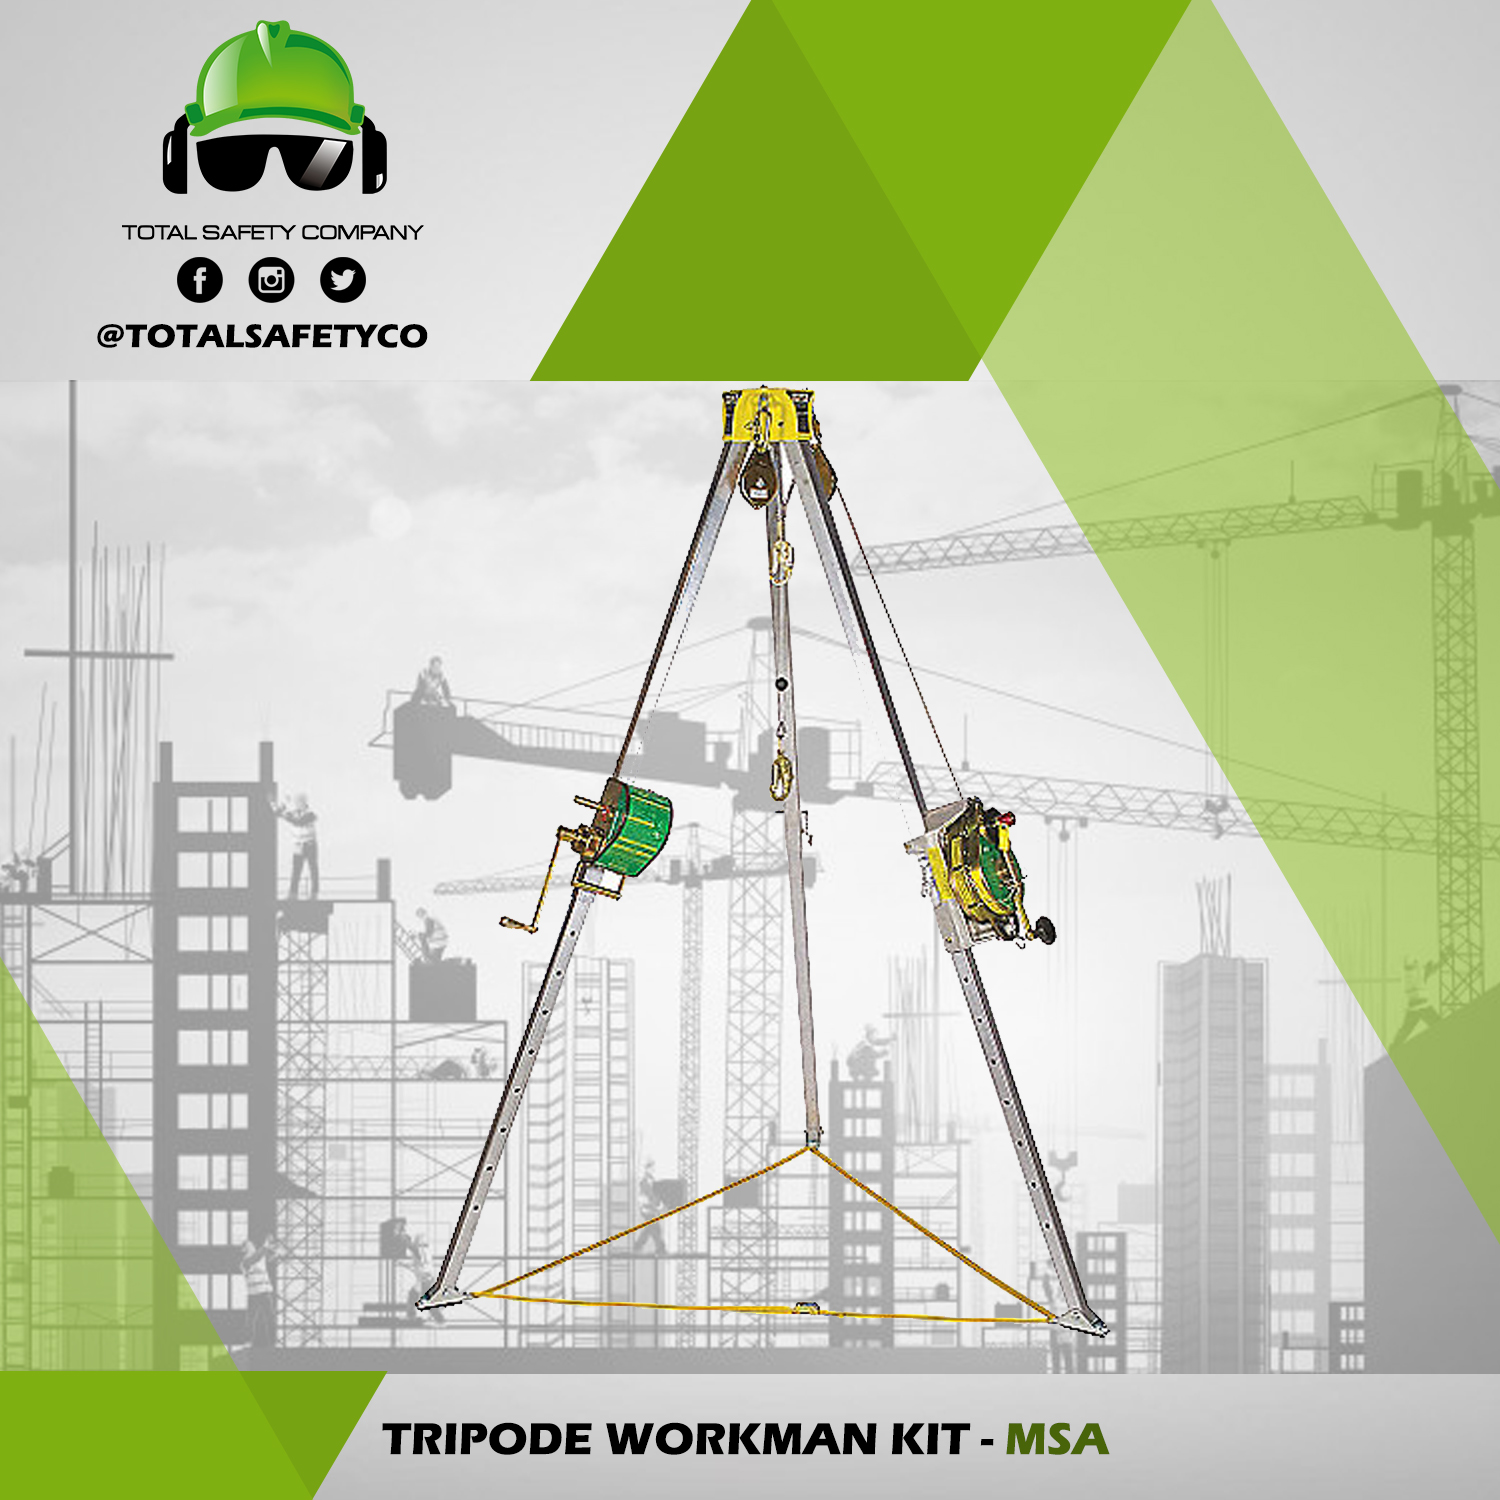 Tripode workman kit - MSA